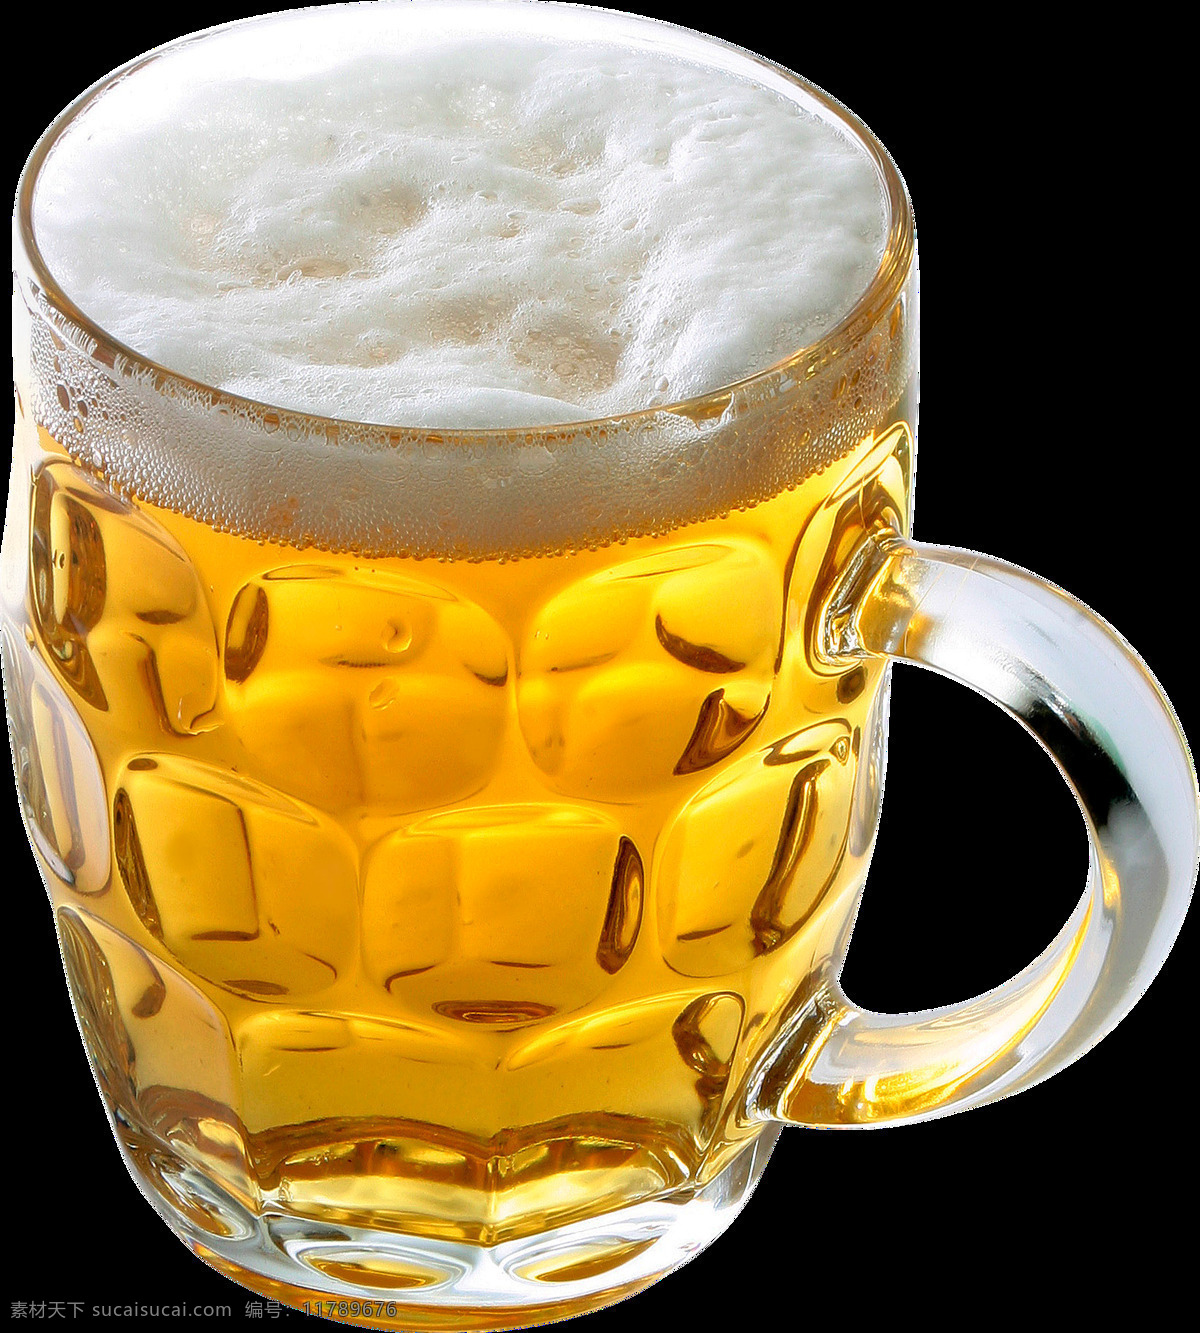 啤酒图片 啤酒 扎啤 啤酒杯 png图 透明图 免扣图 透明背景 透明底 抠图